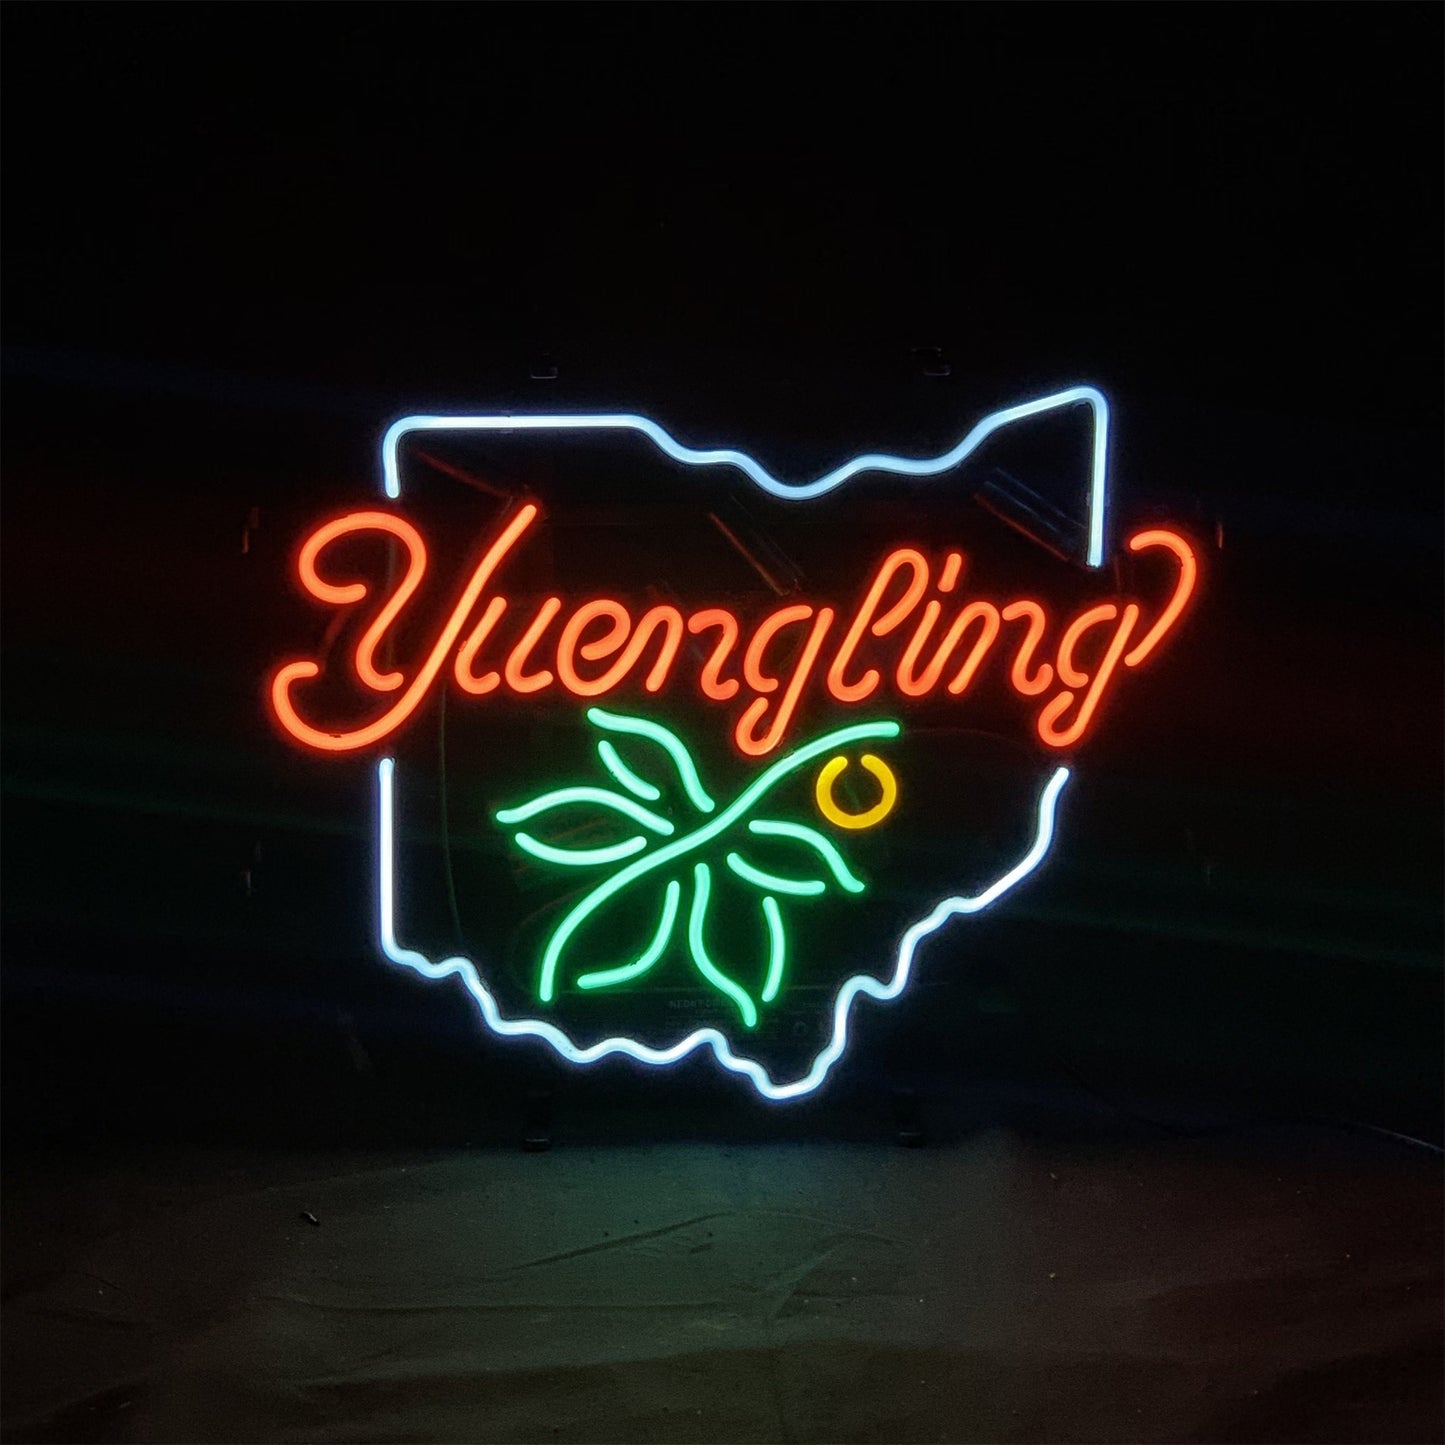 Yuengling Ohio